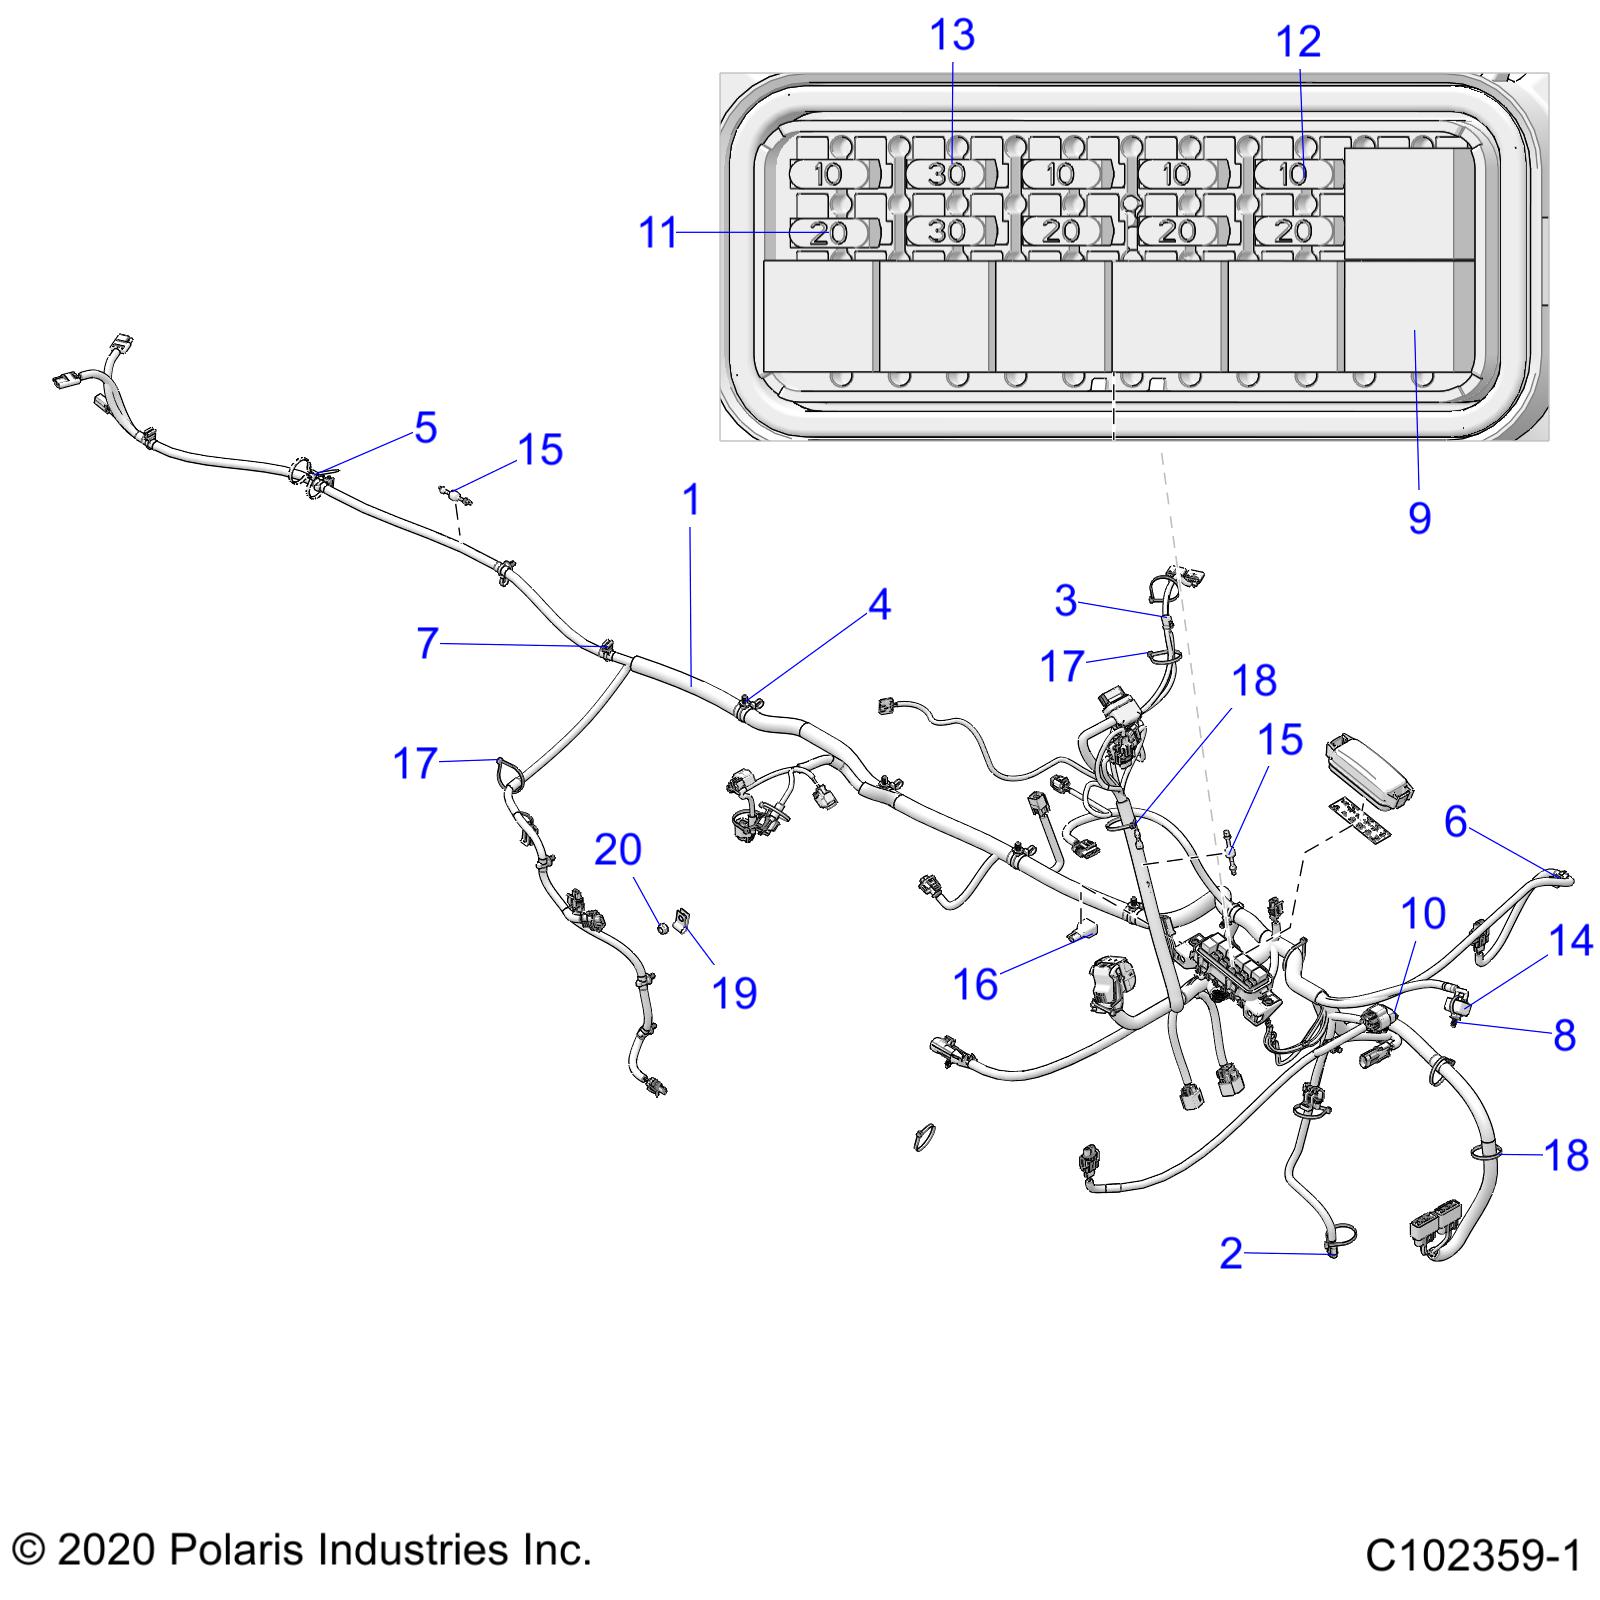 Foto diagrama Polaris que contem a peça 2411086